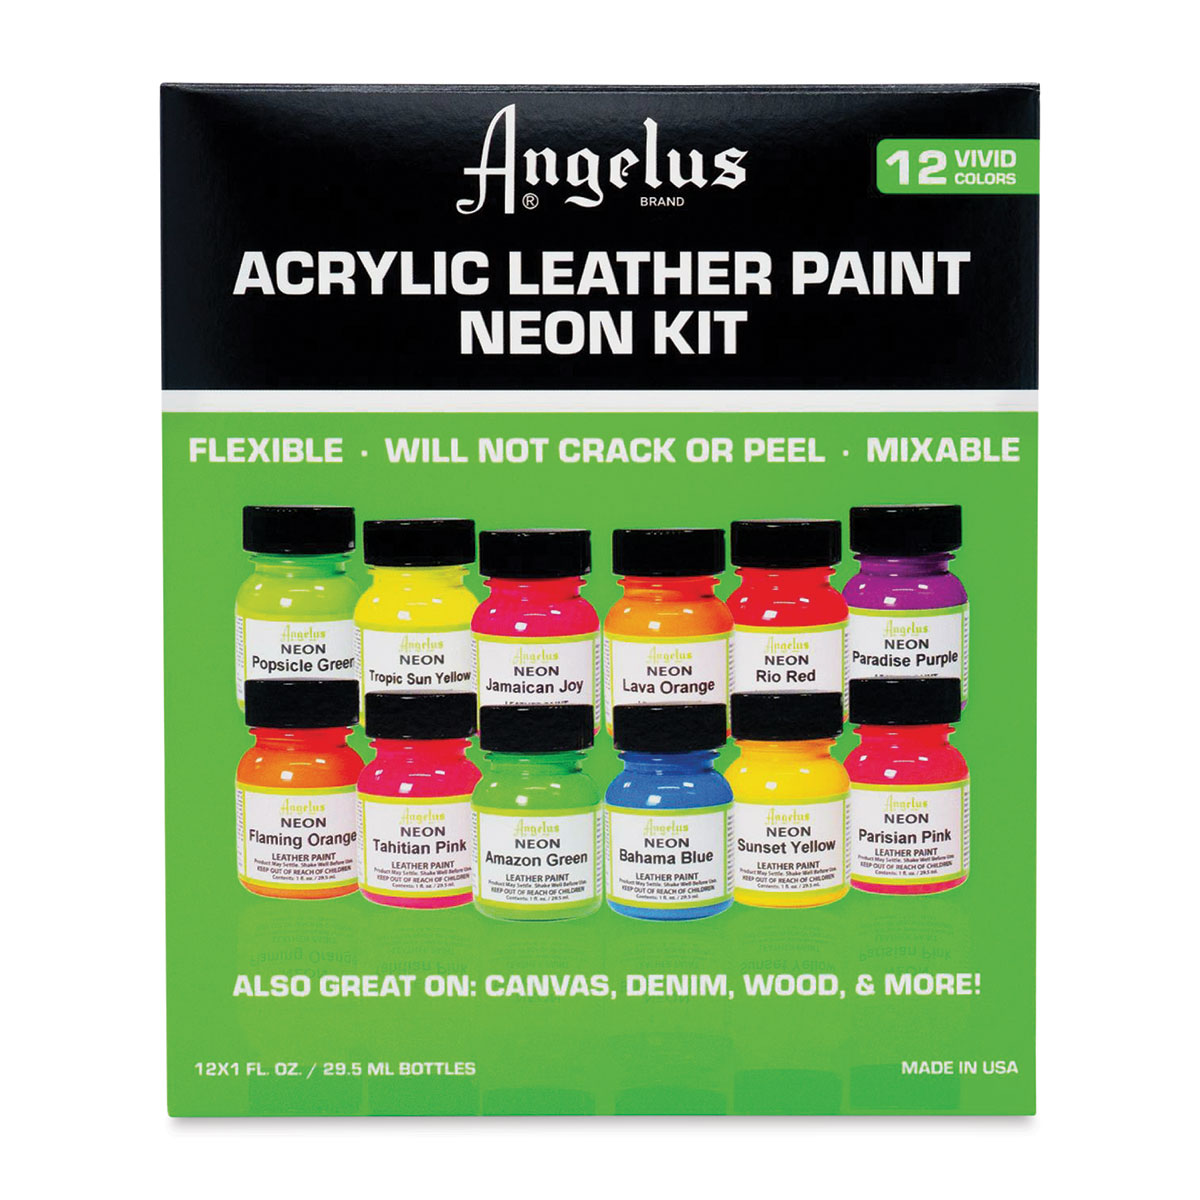 Angelus Leather Paint Purple